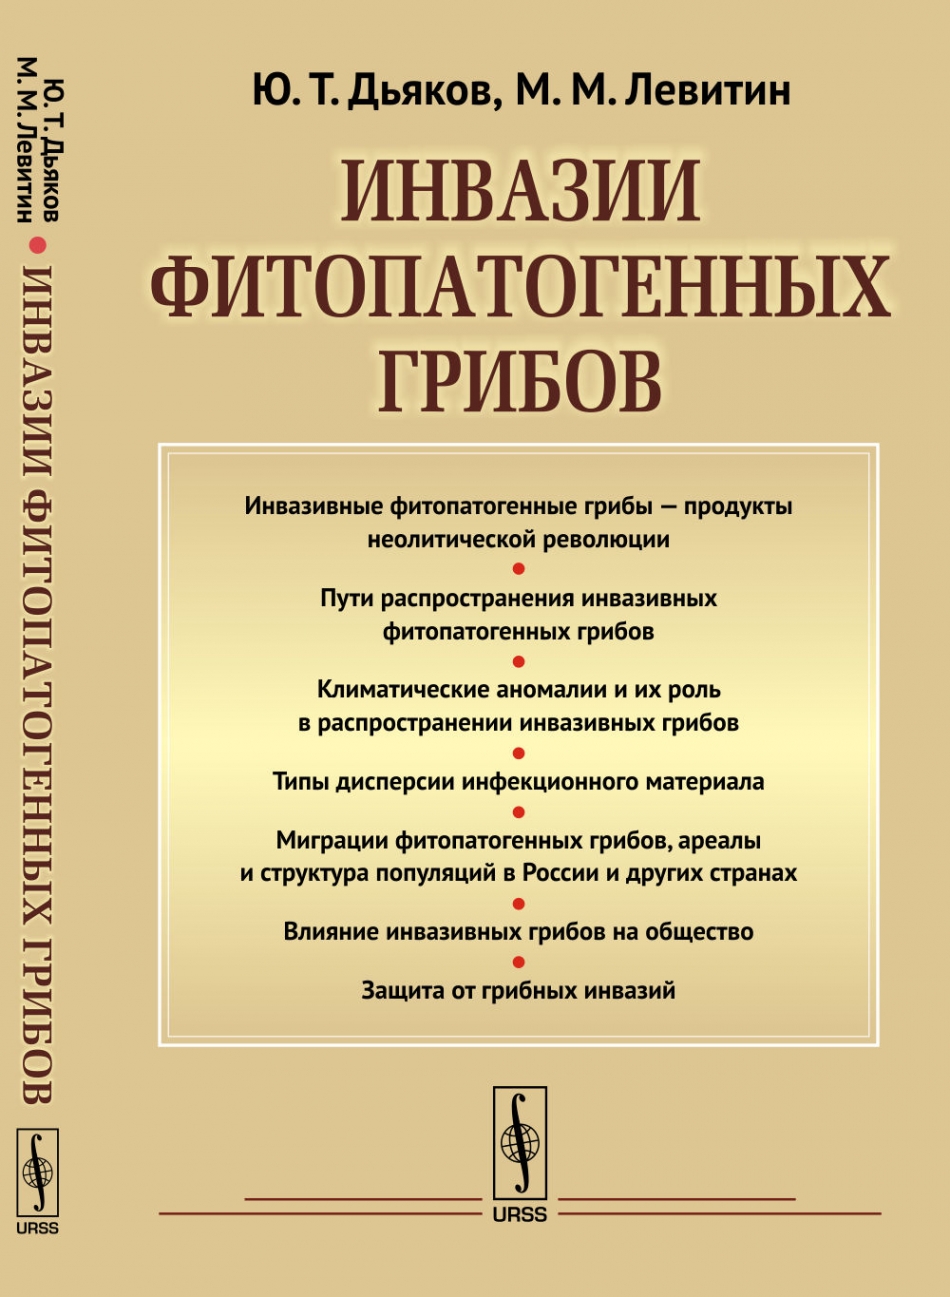 Дьяков Ю.Т., Левитин М.М. Инвазии фитопатогенных грибов 